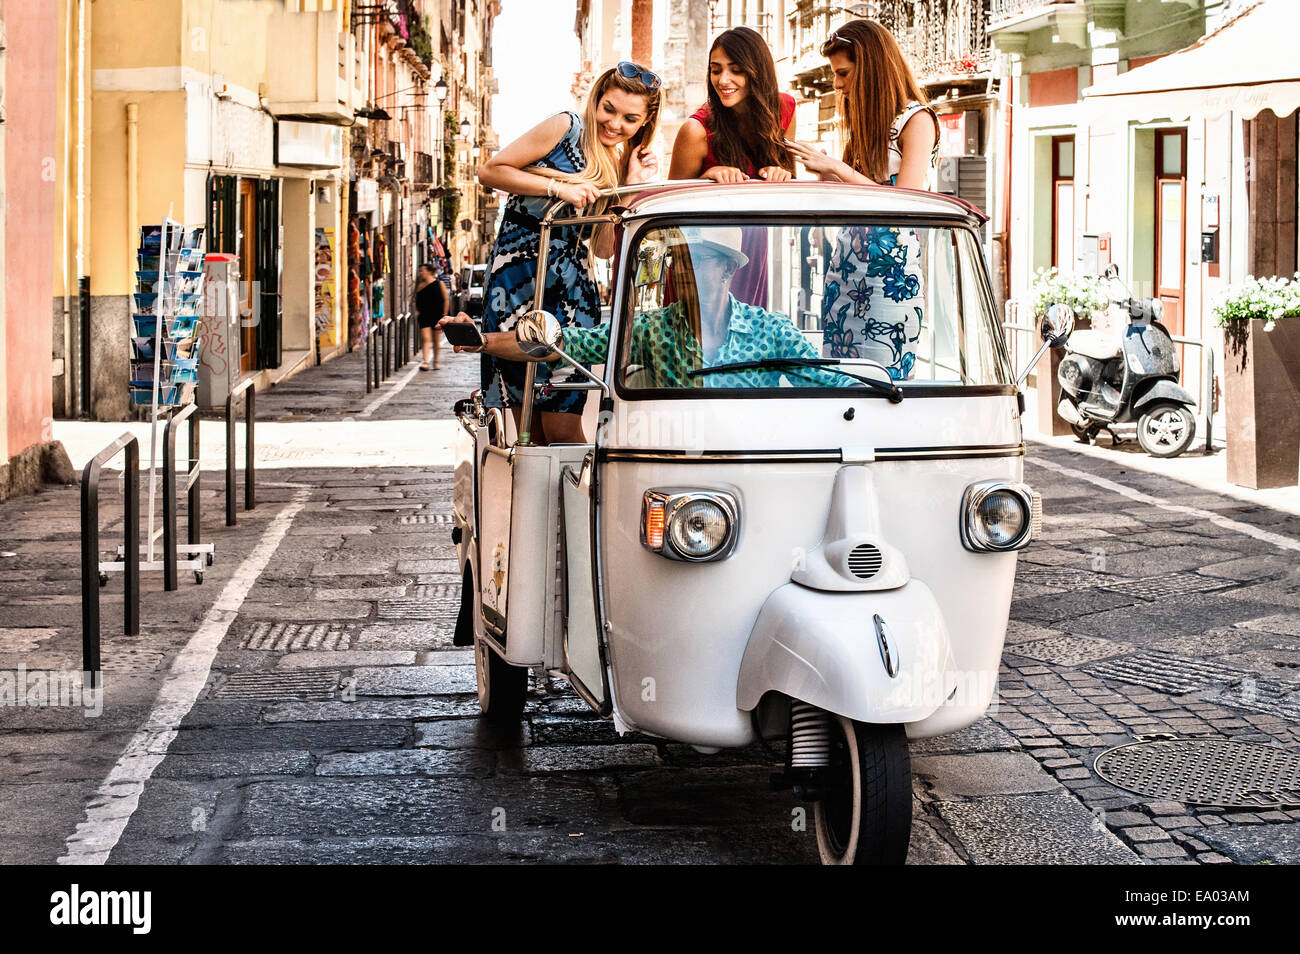 Drei junge Frauen standen in offenen Rücksitz der italienischen taxi, Cagliari, Sardinien, Italien Stockfoto